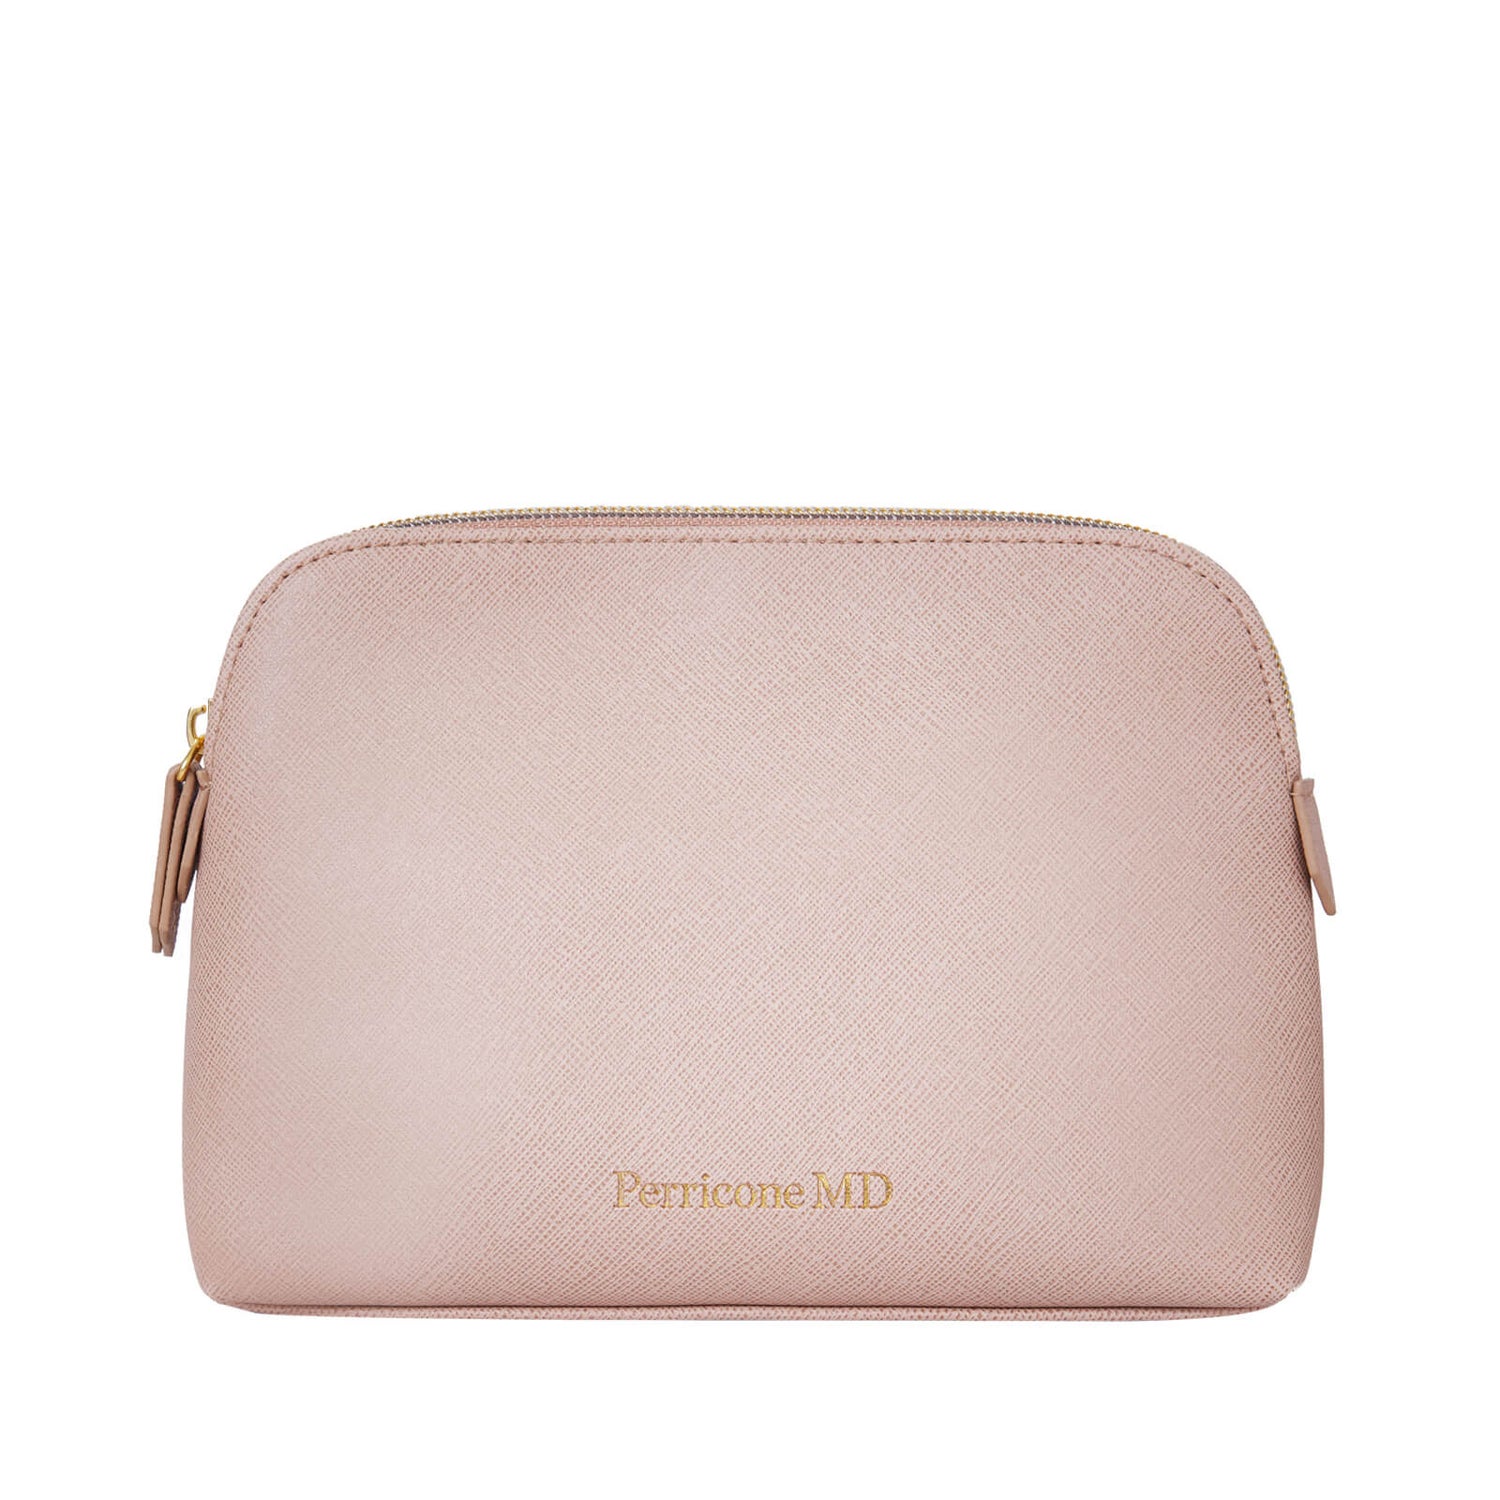 Perricone MD 2020 GWP Tan Cosmetic Bag